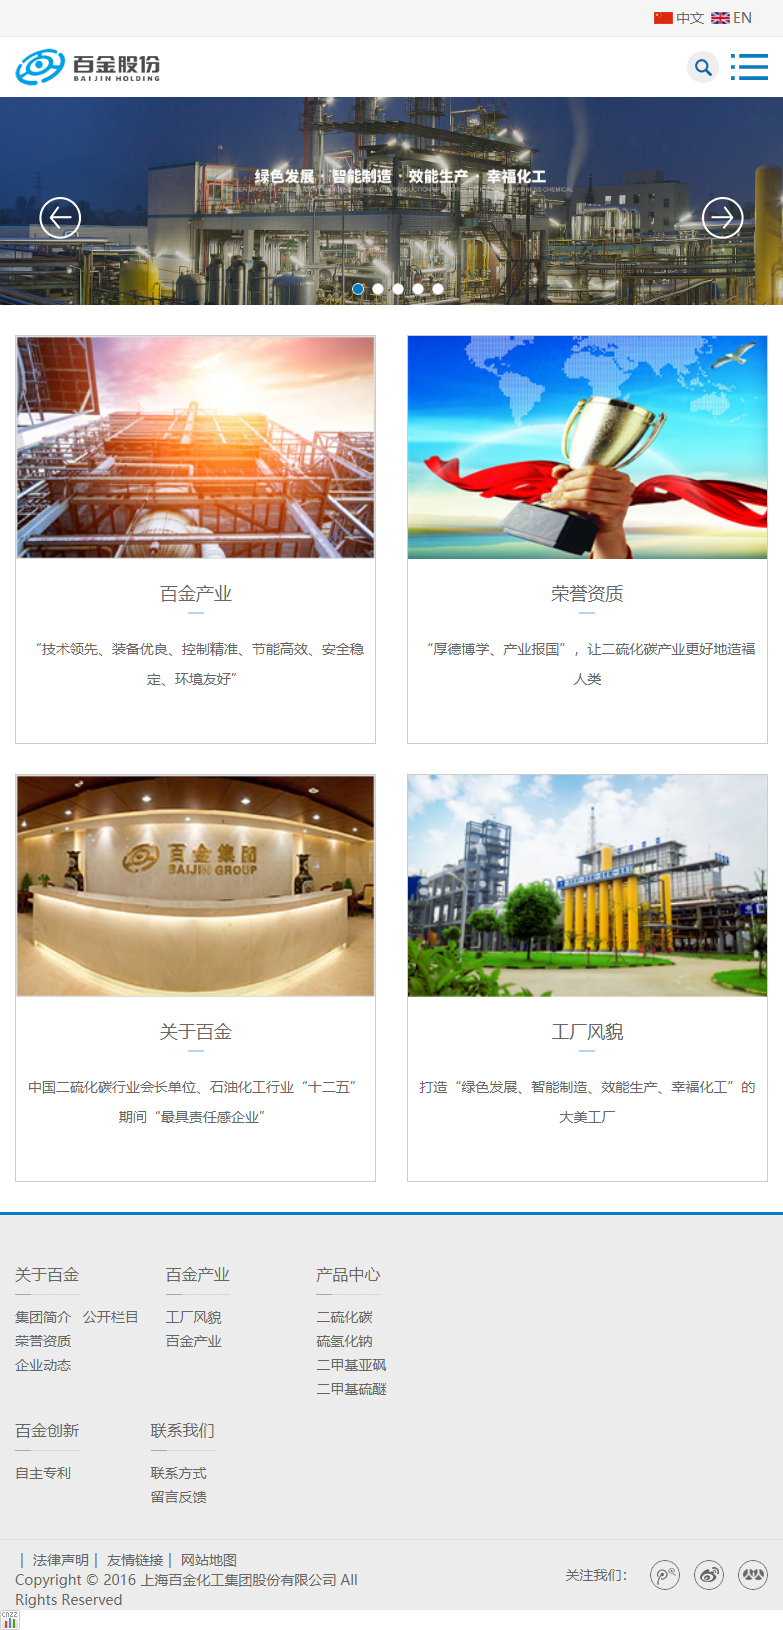 上海百金化工集团股份有限公司网站案例